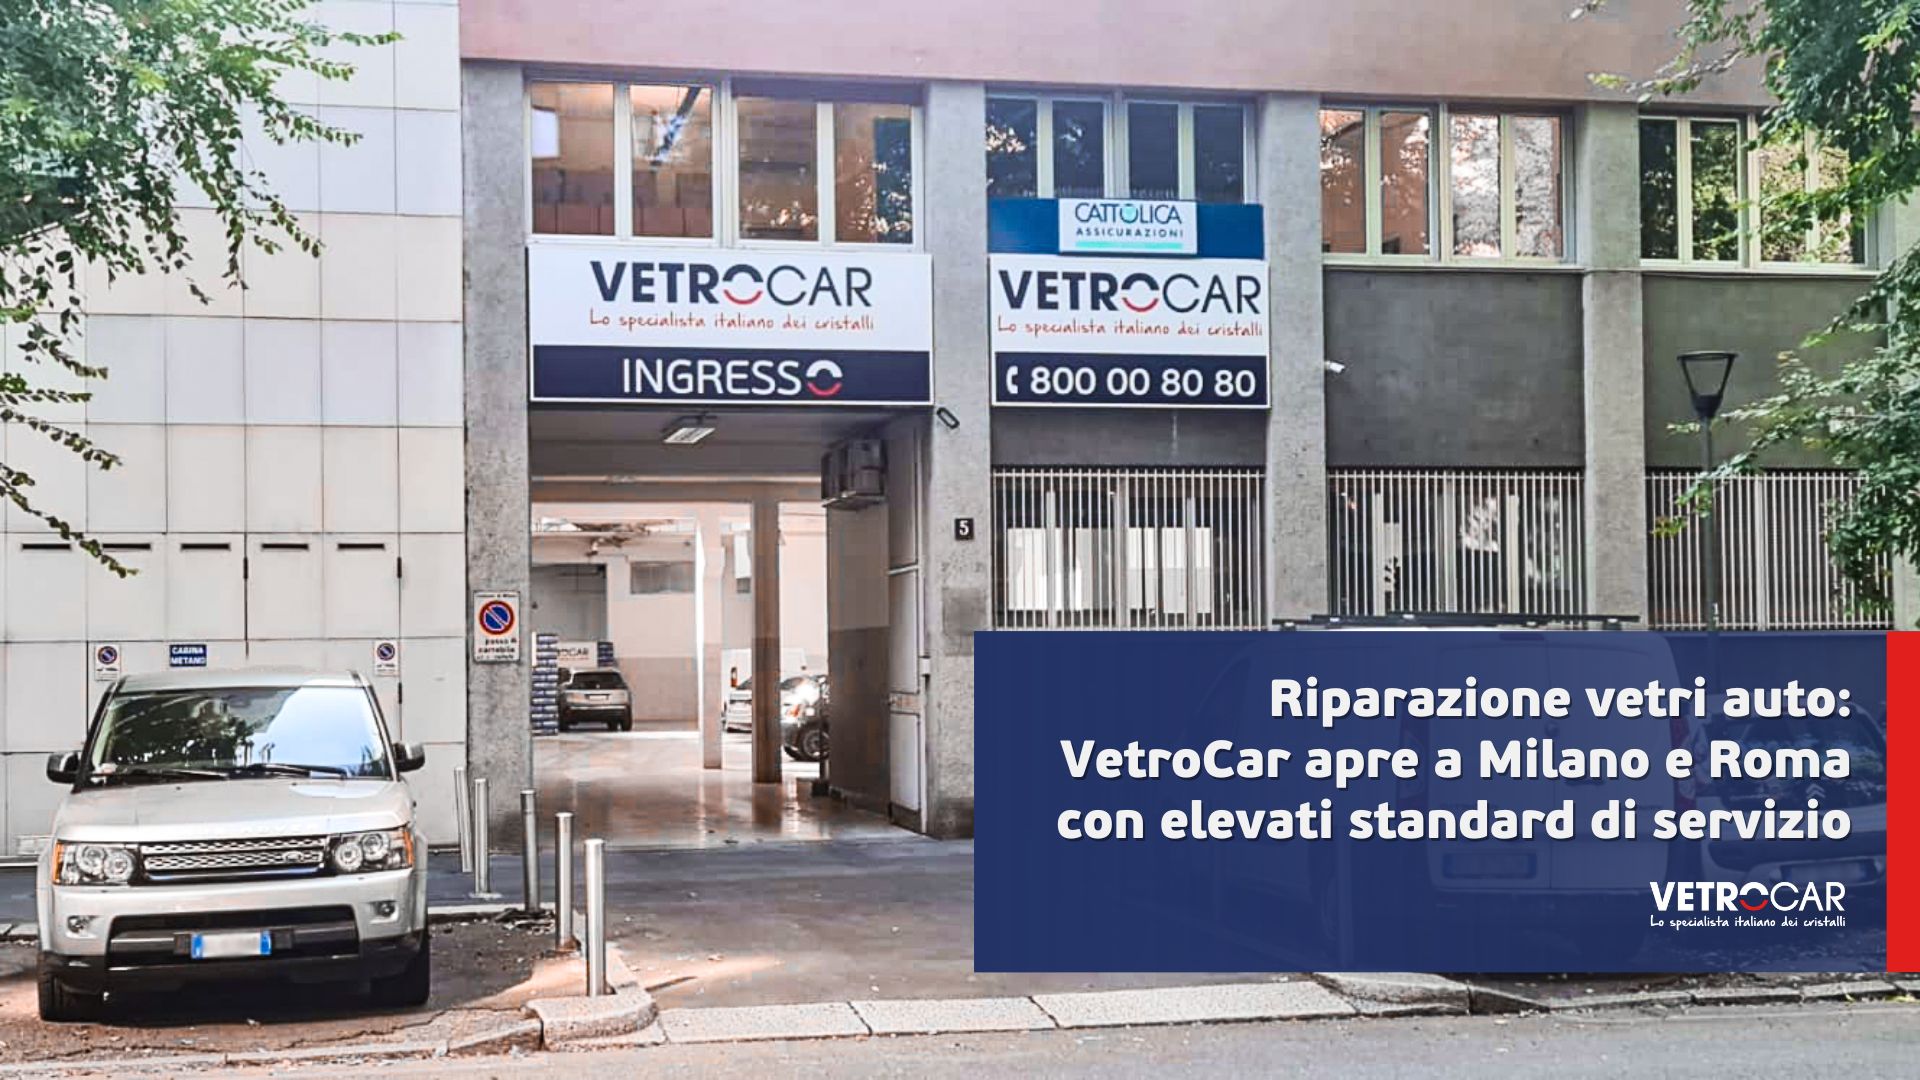 VetroCar apre a Milano e Roma con elevati standard di servizio